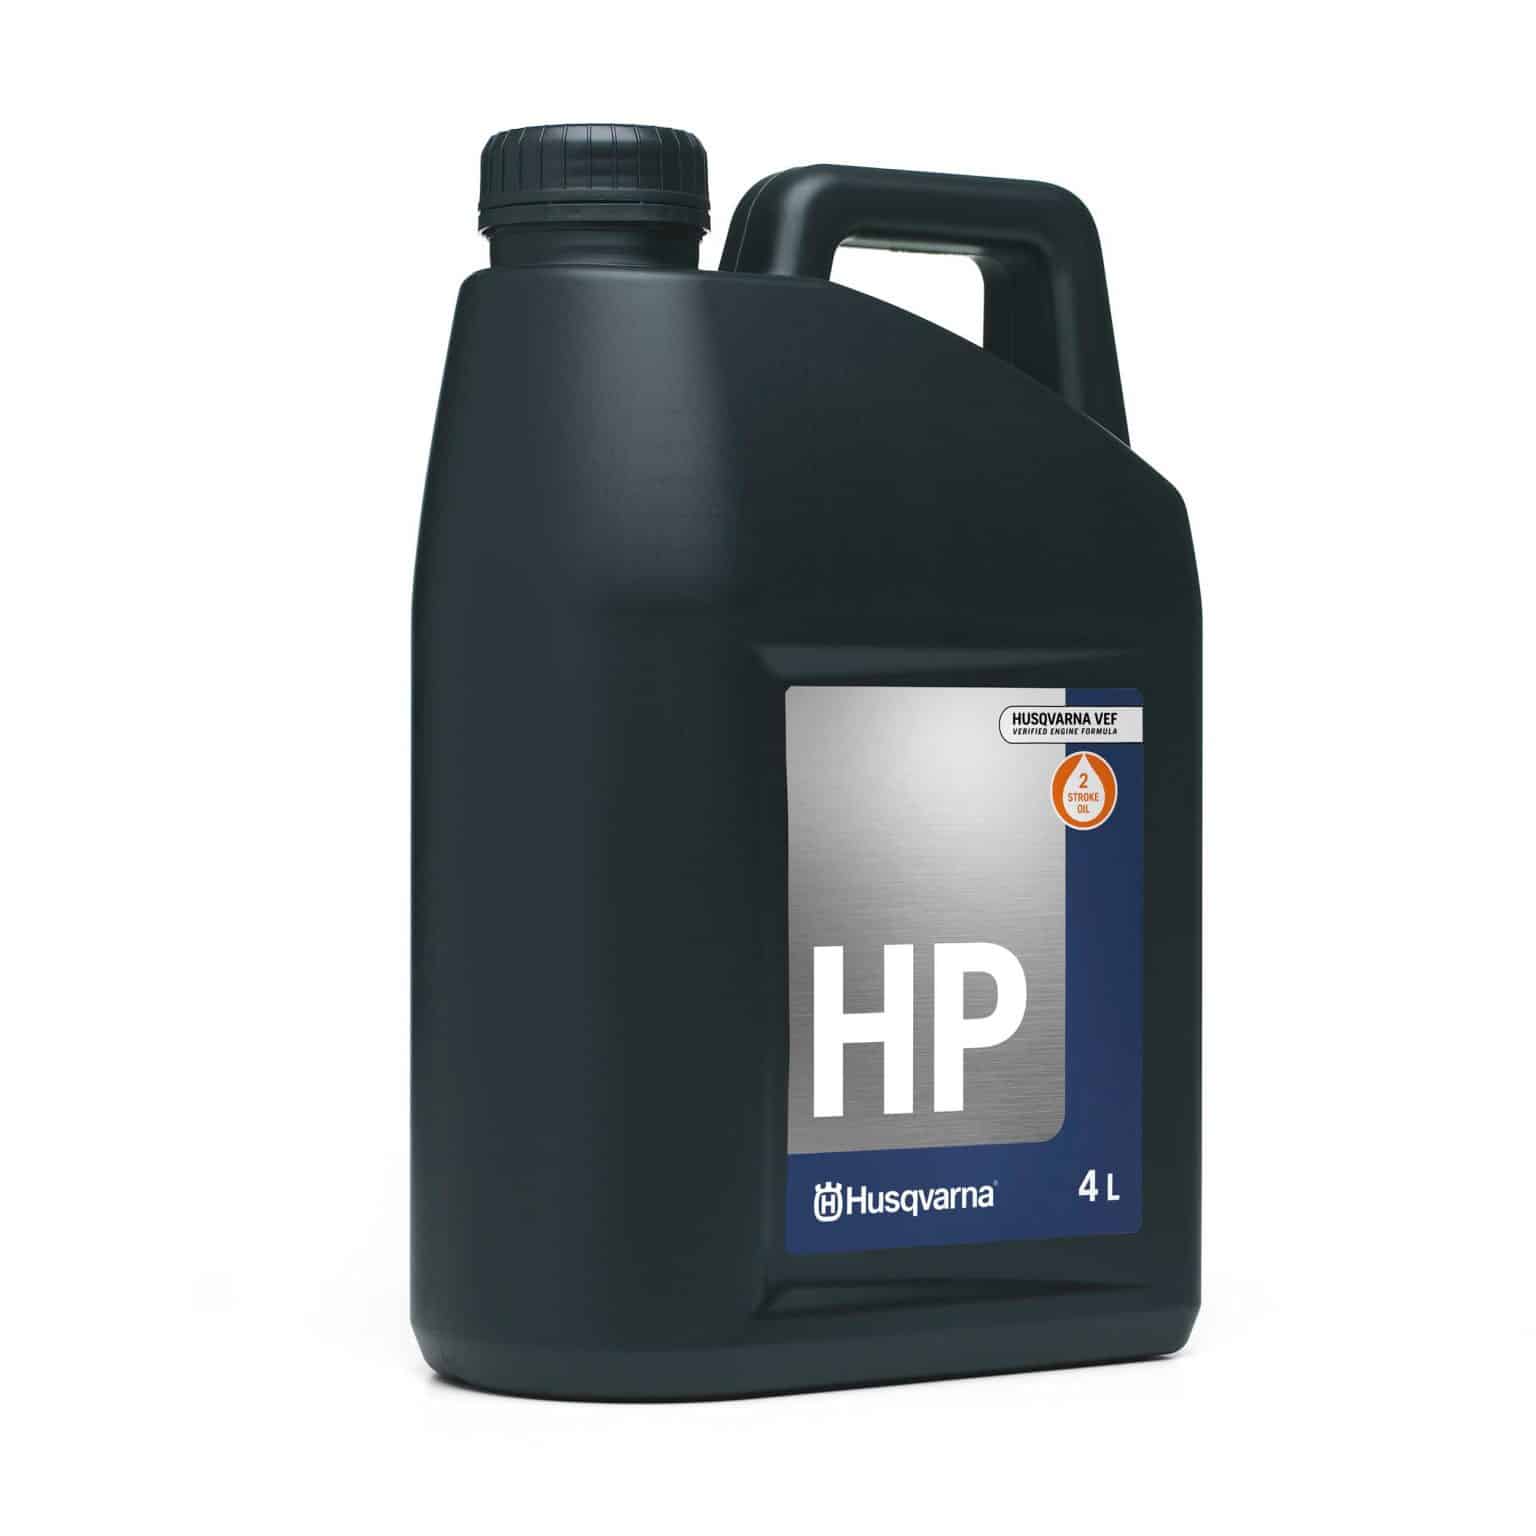 Husqvarna HP 2-Stroke Oil 4L